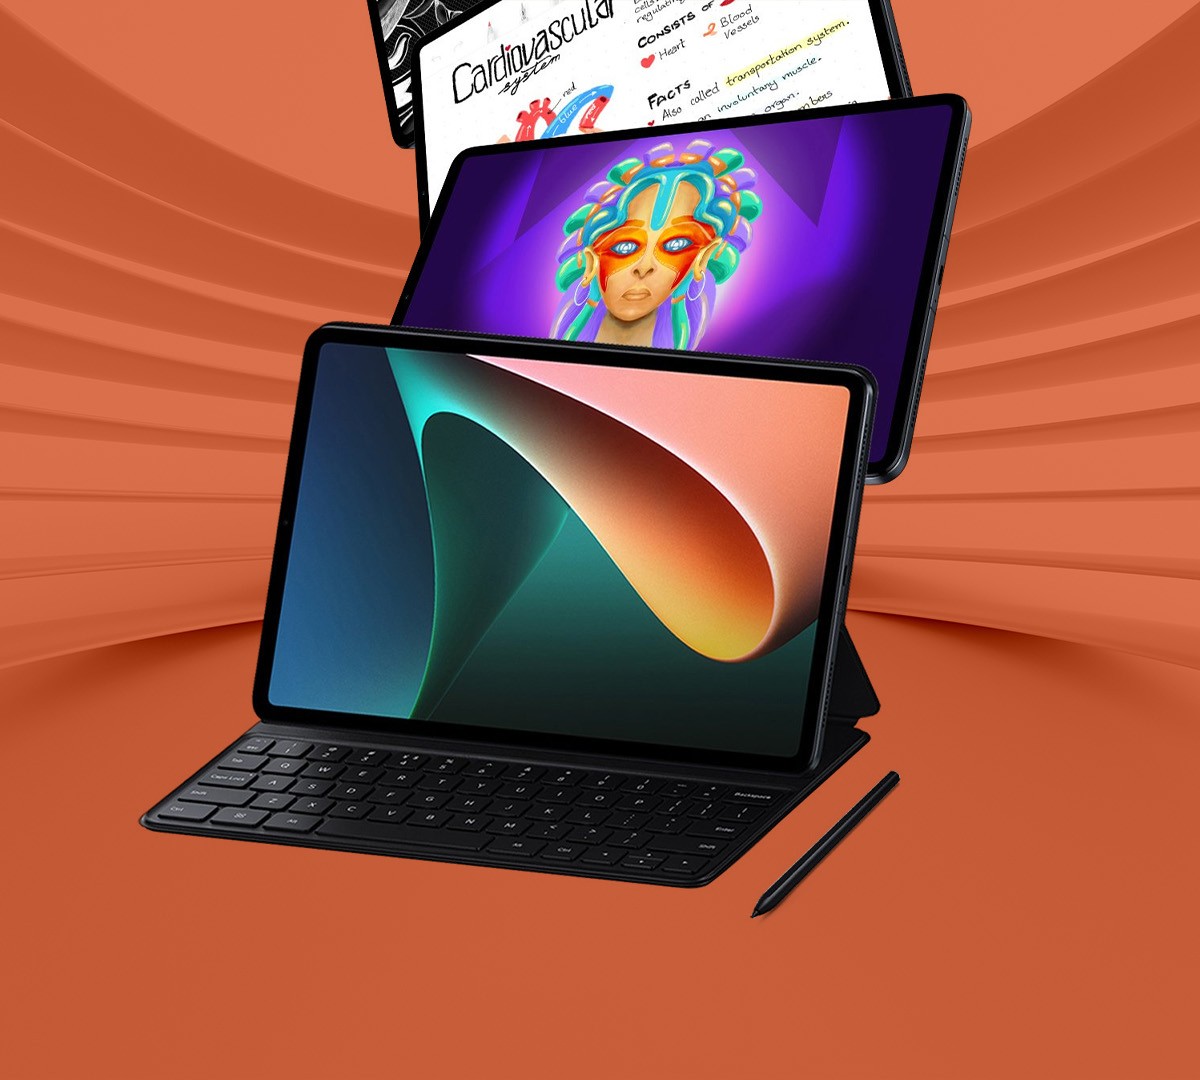 Exame Informática  Teste ao Xiaomi Pad 6: Um tablet altamente competente